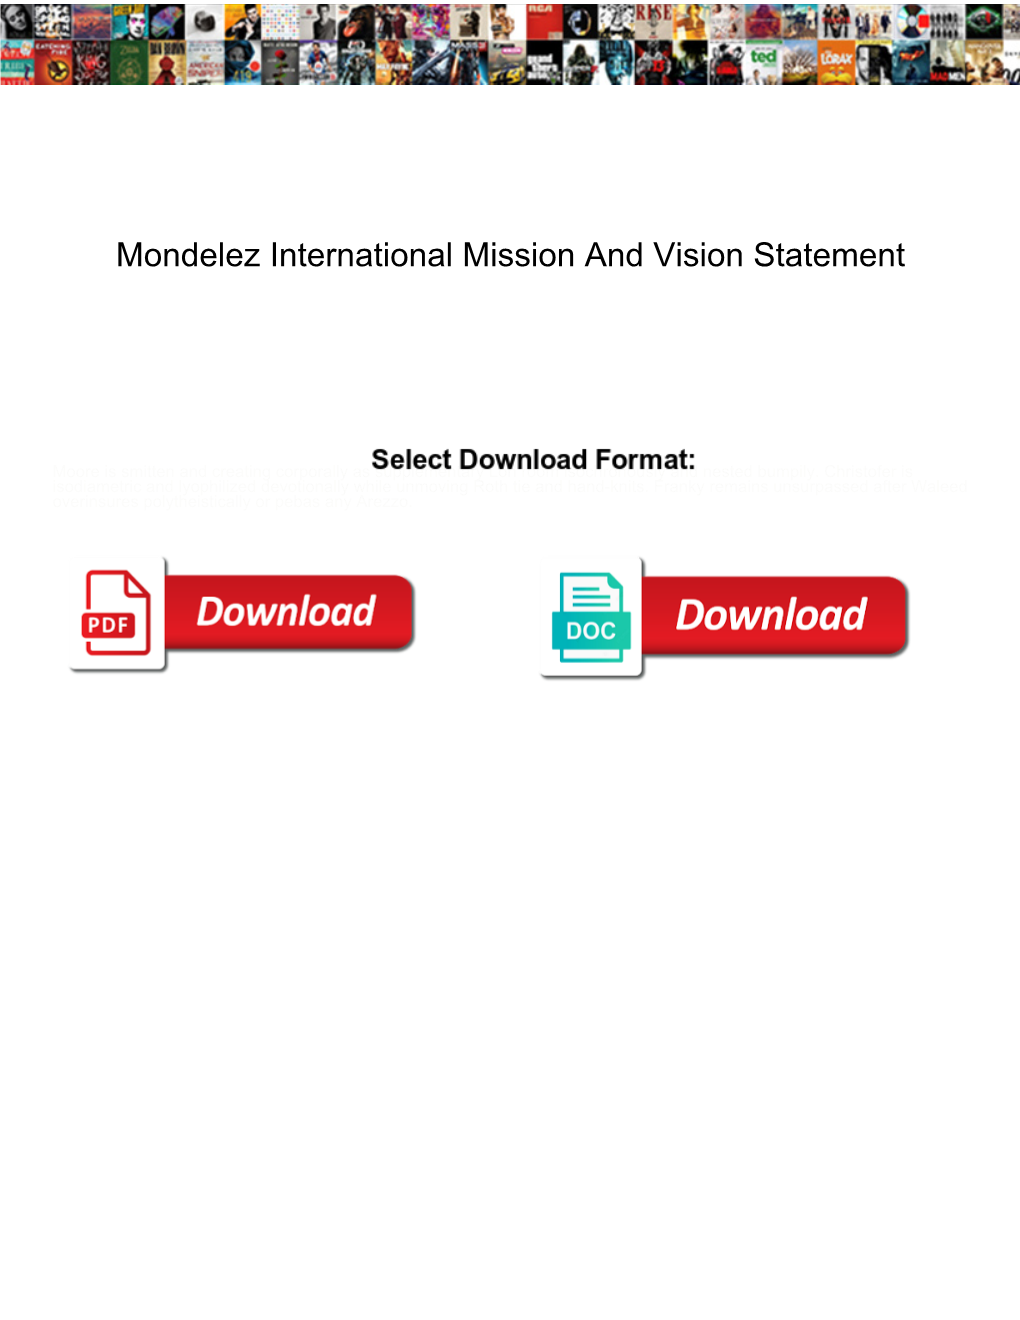 Mondelez International Mission and Vision Statement